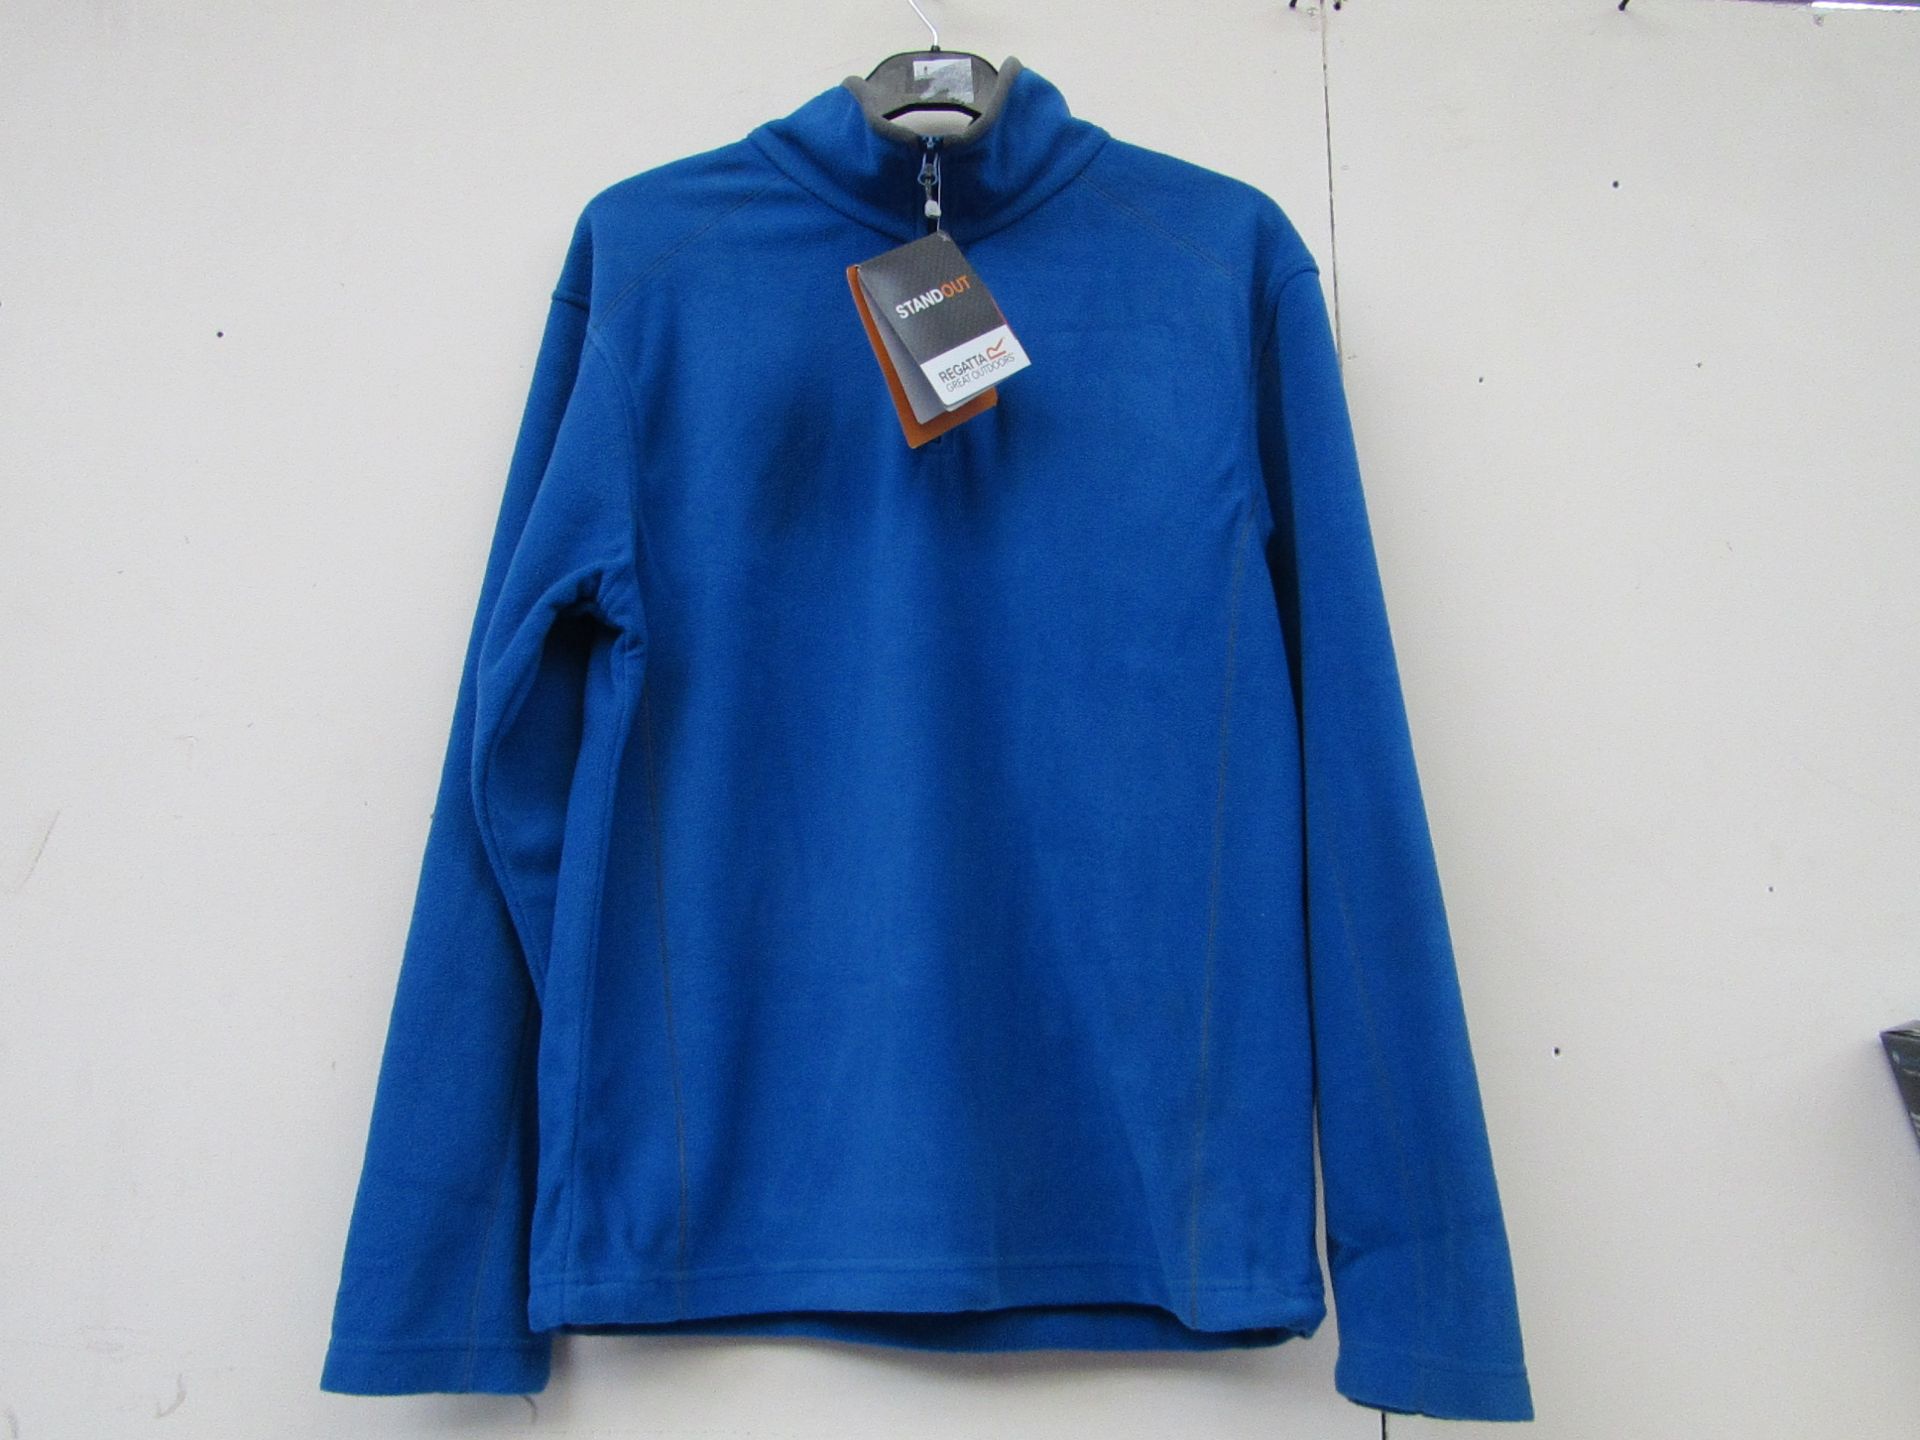 Regatta blue fleece (size L), new in packaging